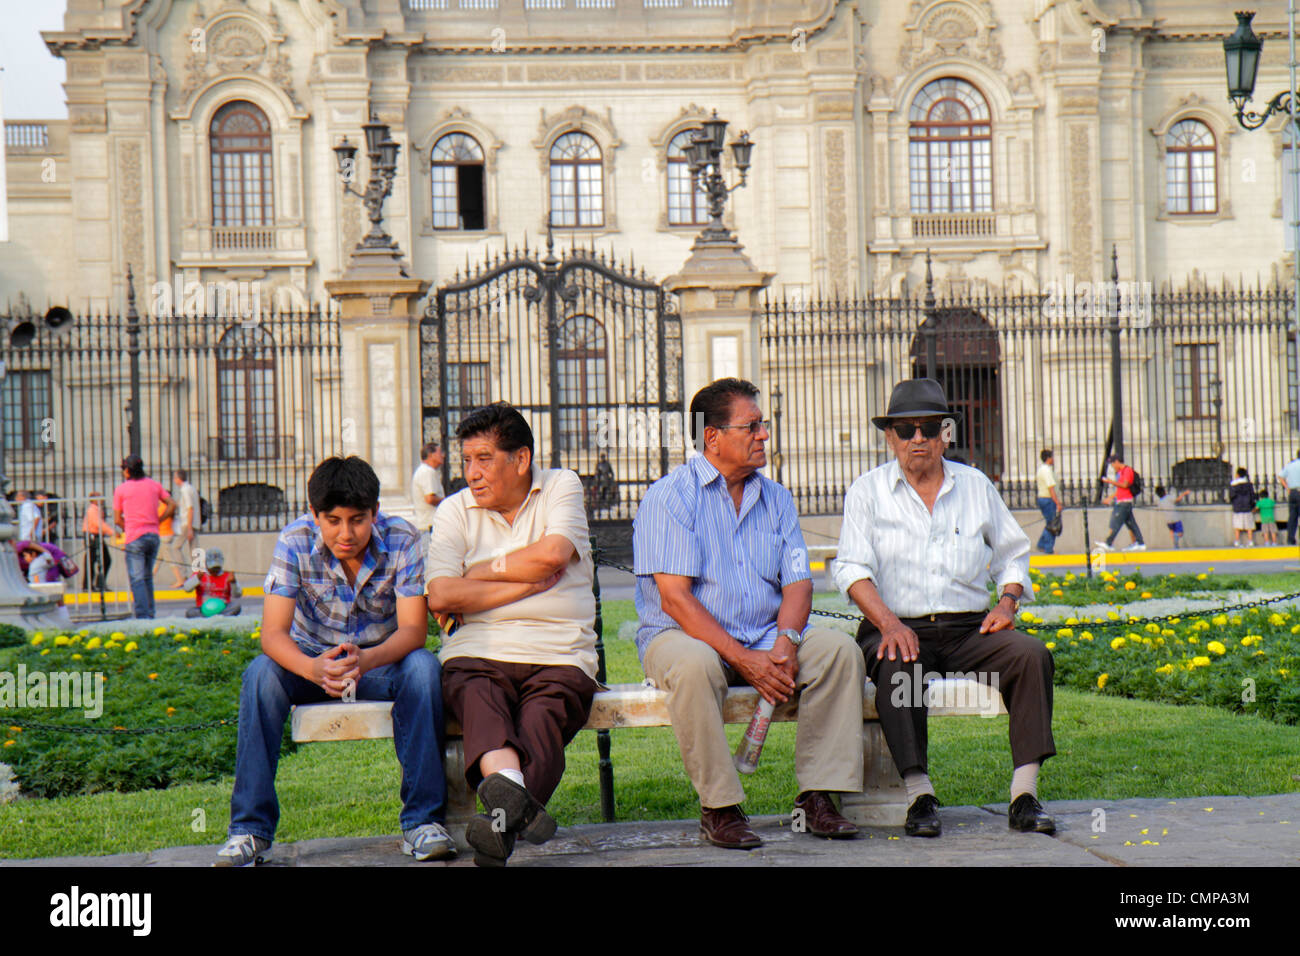 Lima Peru, Plaza de Armas, Palacio de Gobierno, Regierungspalast, Regierungsgebäude, Neobarock, Architektur außen, Tor, öffentlicher Platz, Park, H Stockfoto